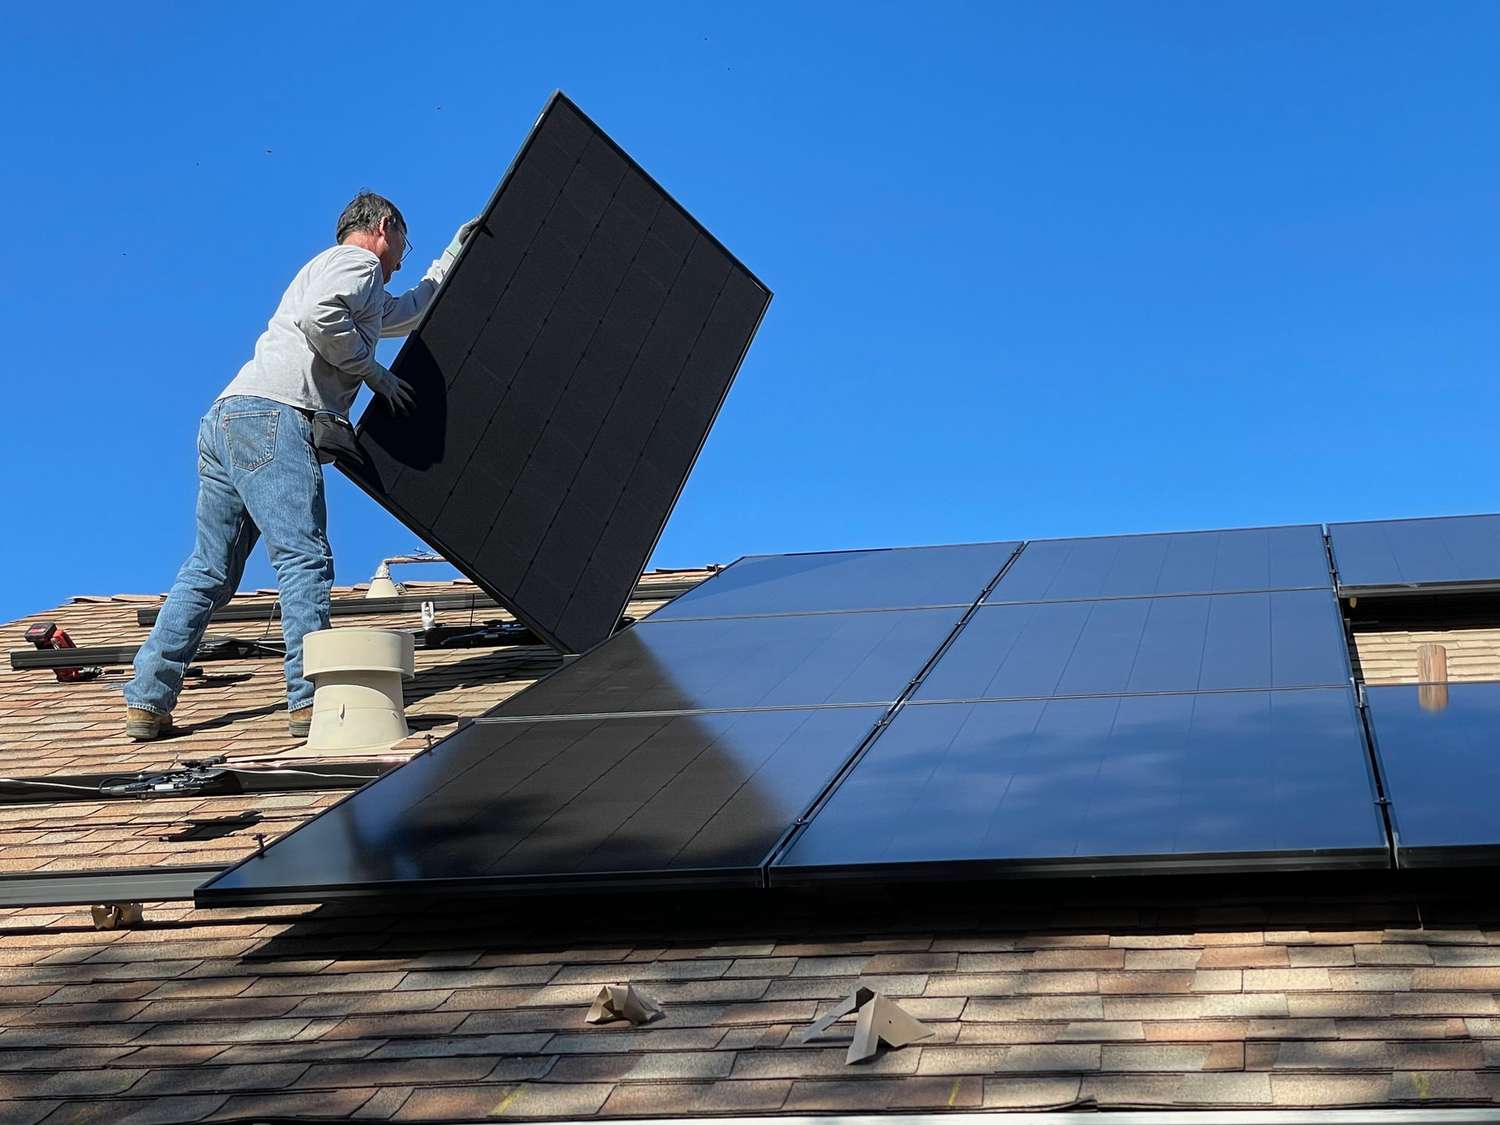 άνθρωπος που εγκαθιστά ηλιακούς συλλέκτες στη στέγη ενός σπιτιού